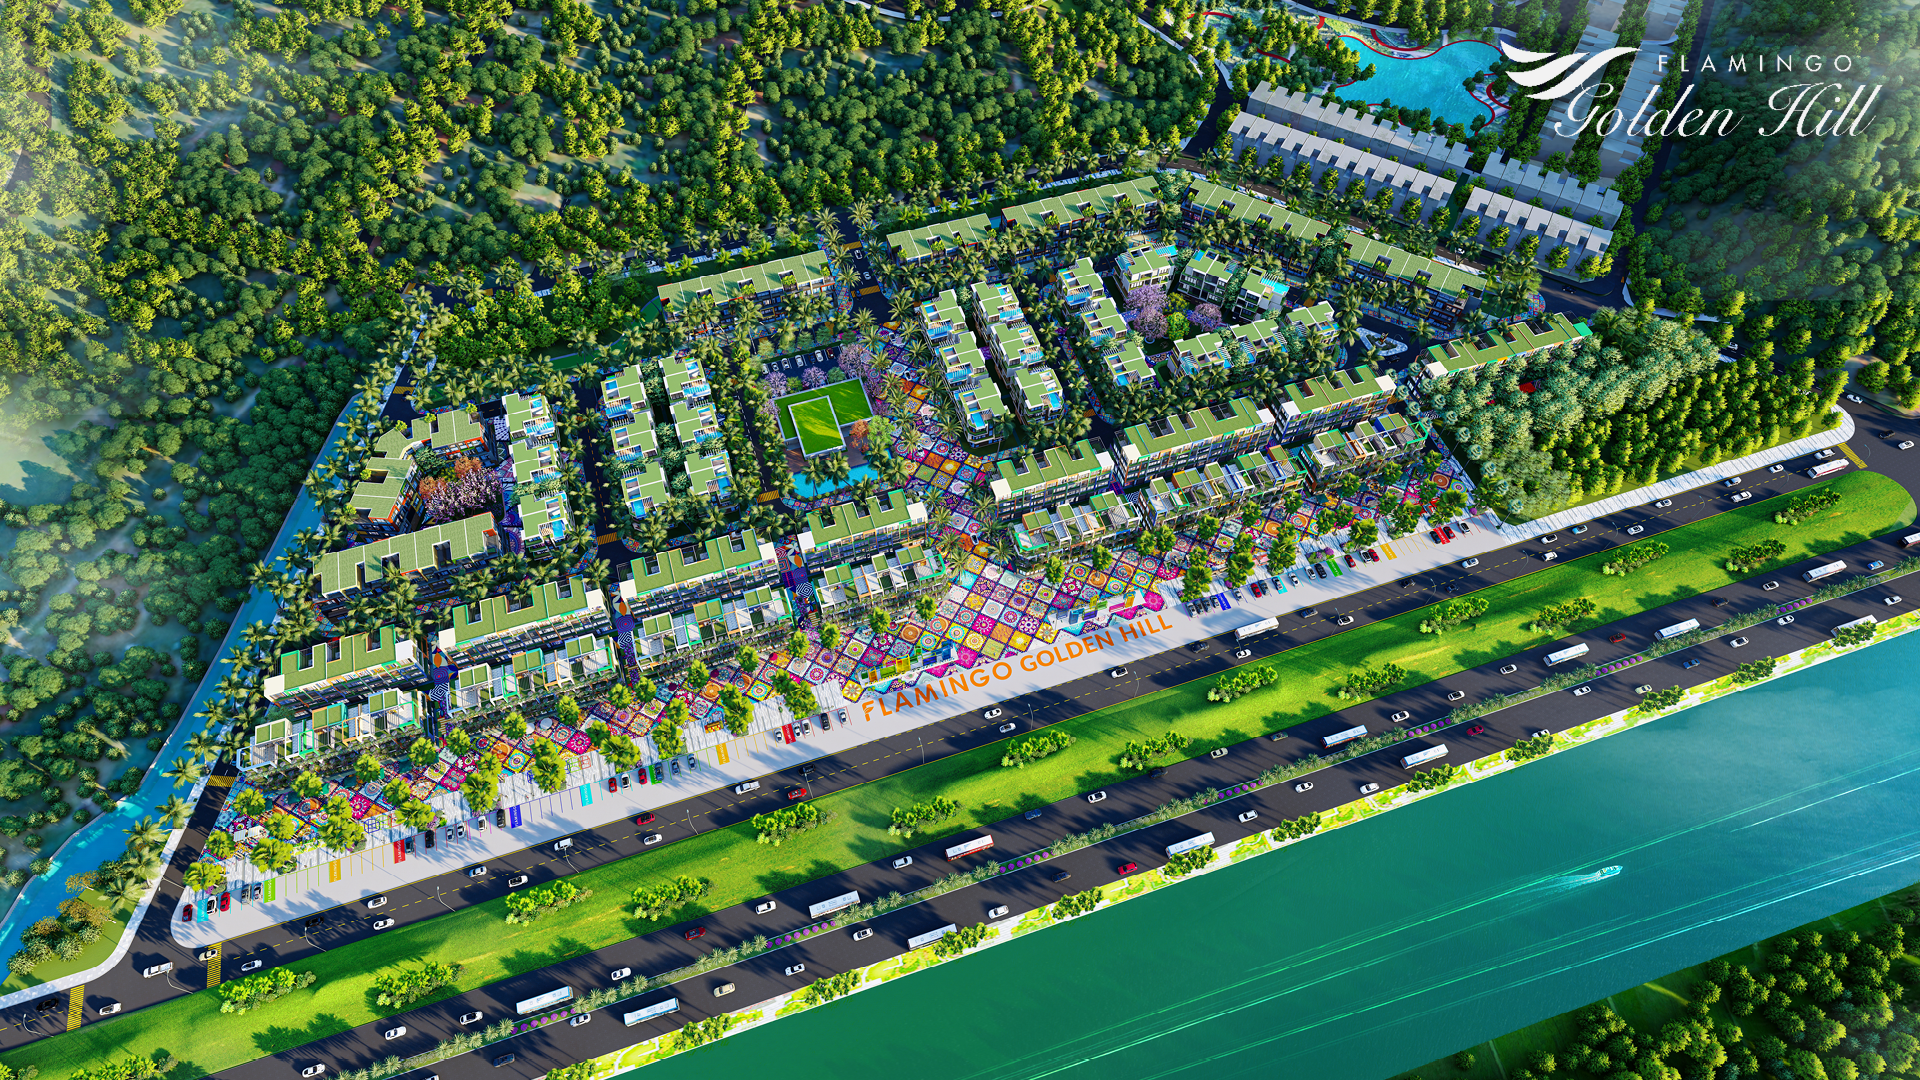 Thành phố Flamingo Golden Hill hấp dẫn nhà đầu tư thông thái với chính sách 15% ban đầu - Ảnh 2.